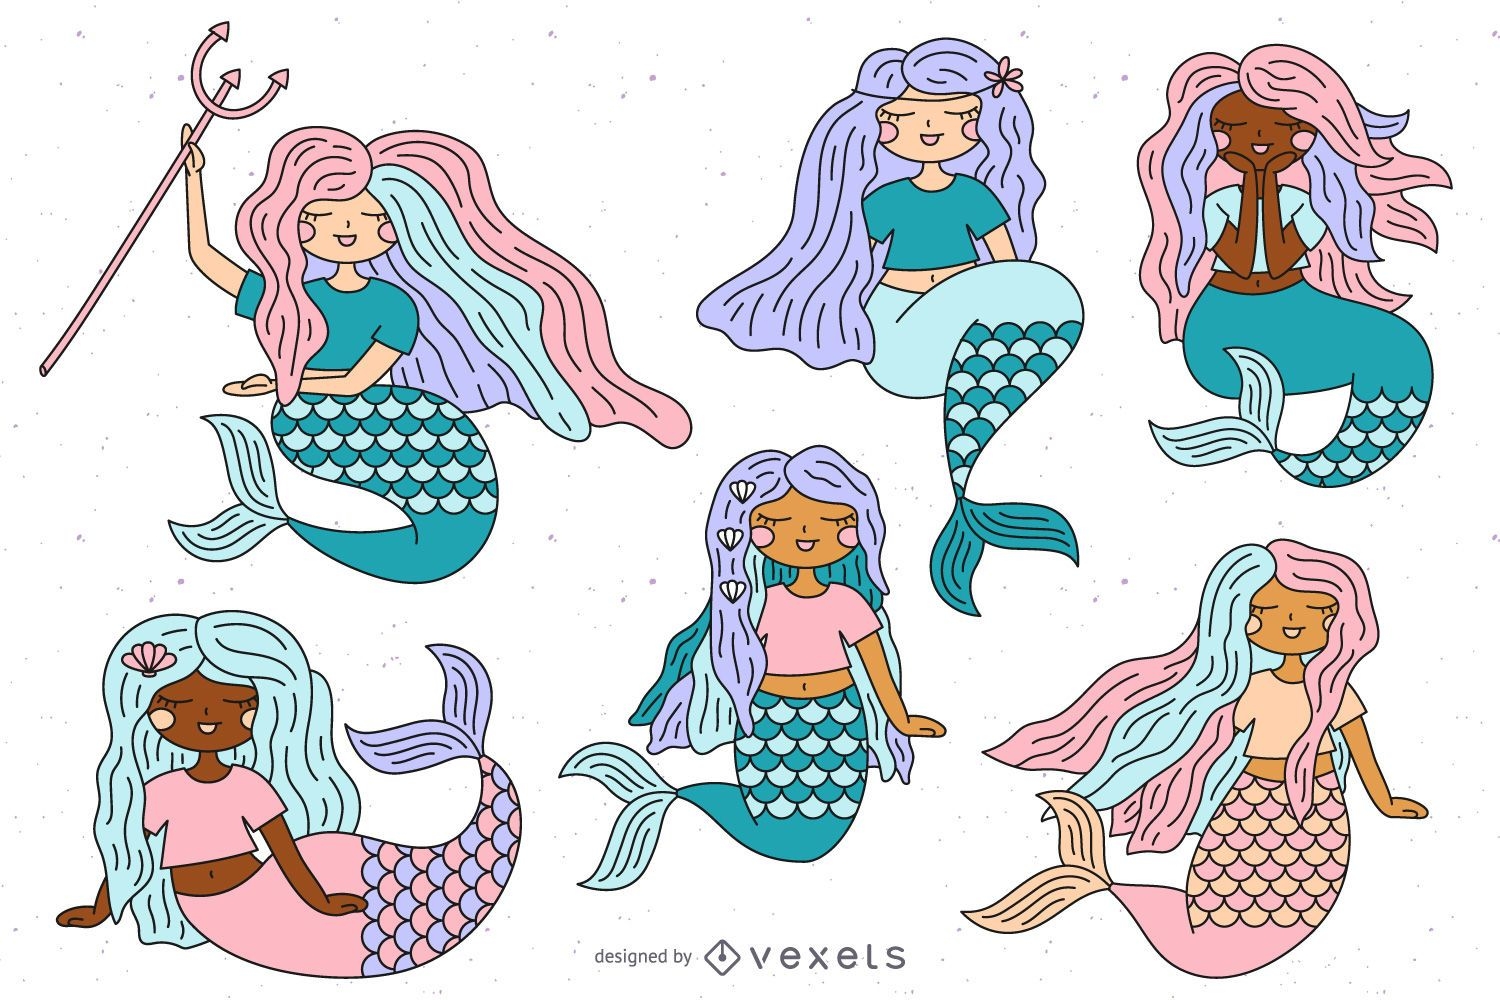 Cute mermaids illustration set